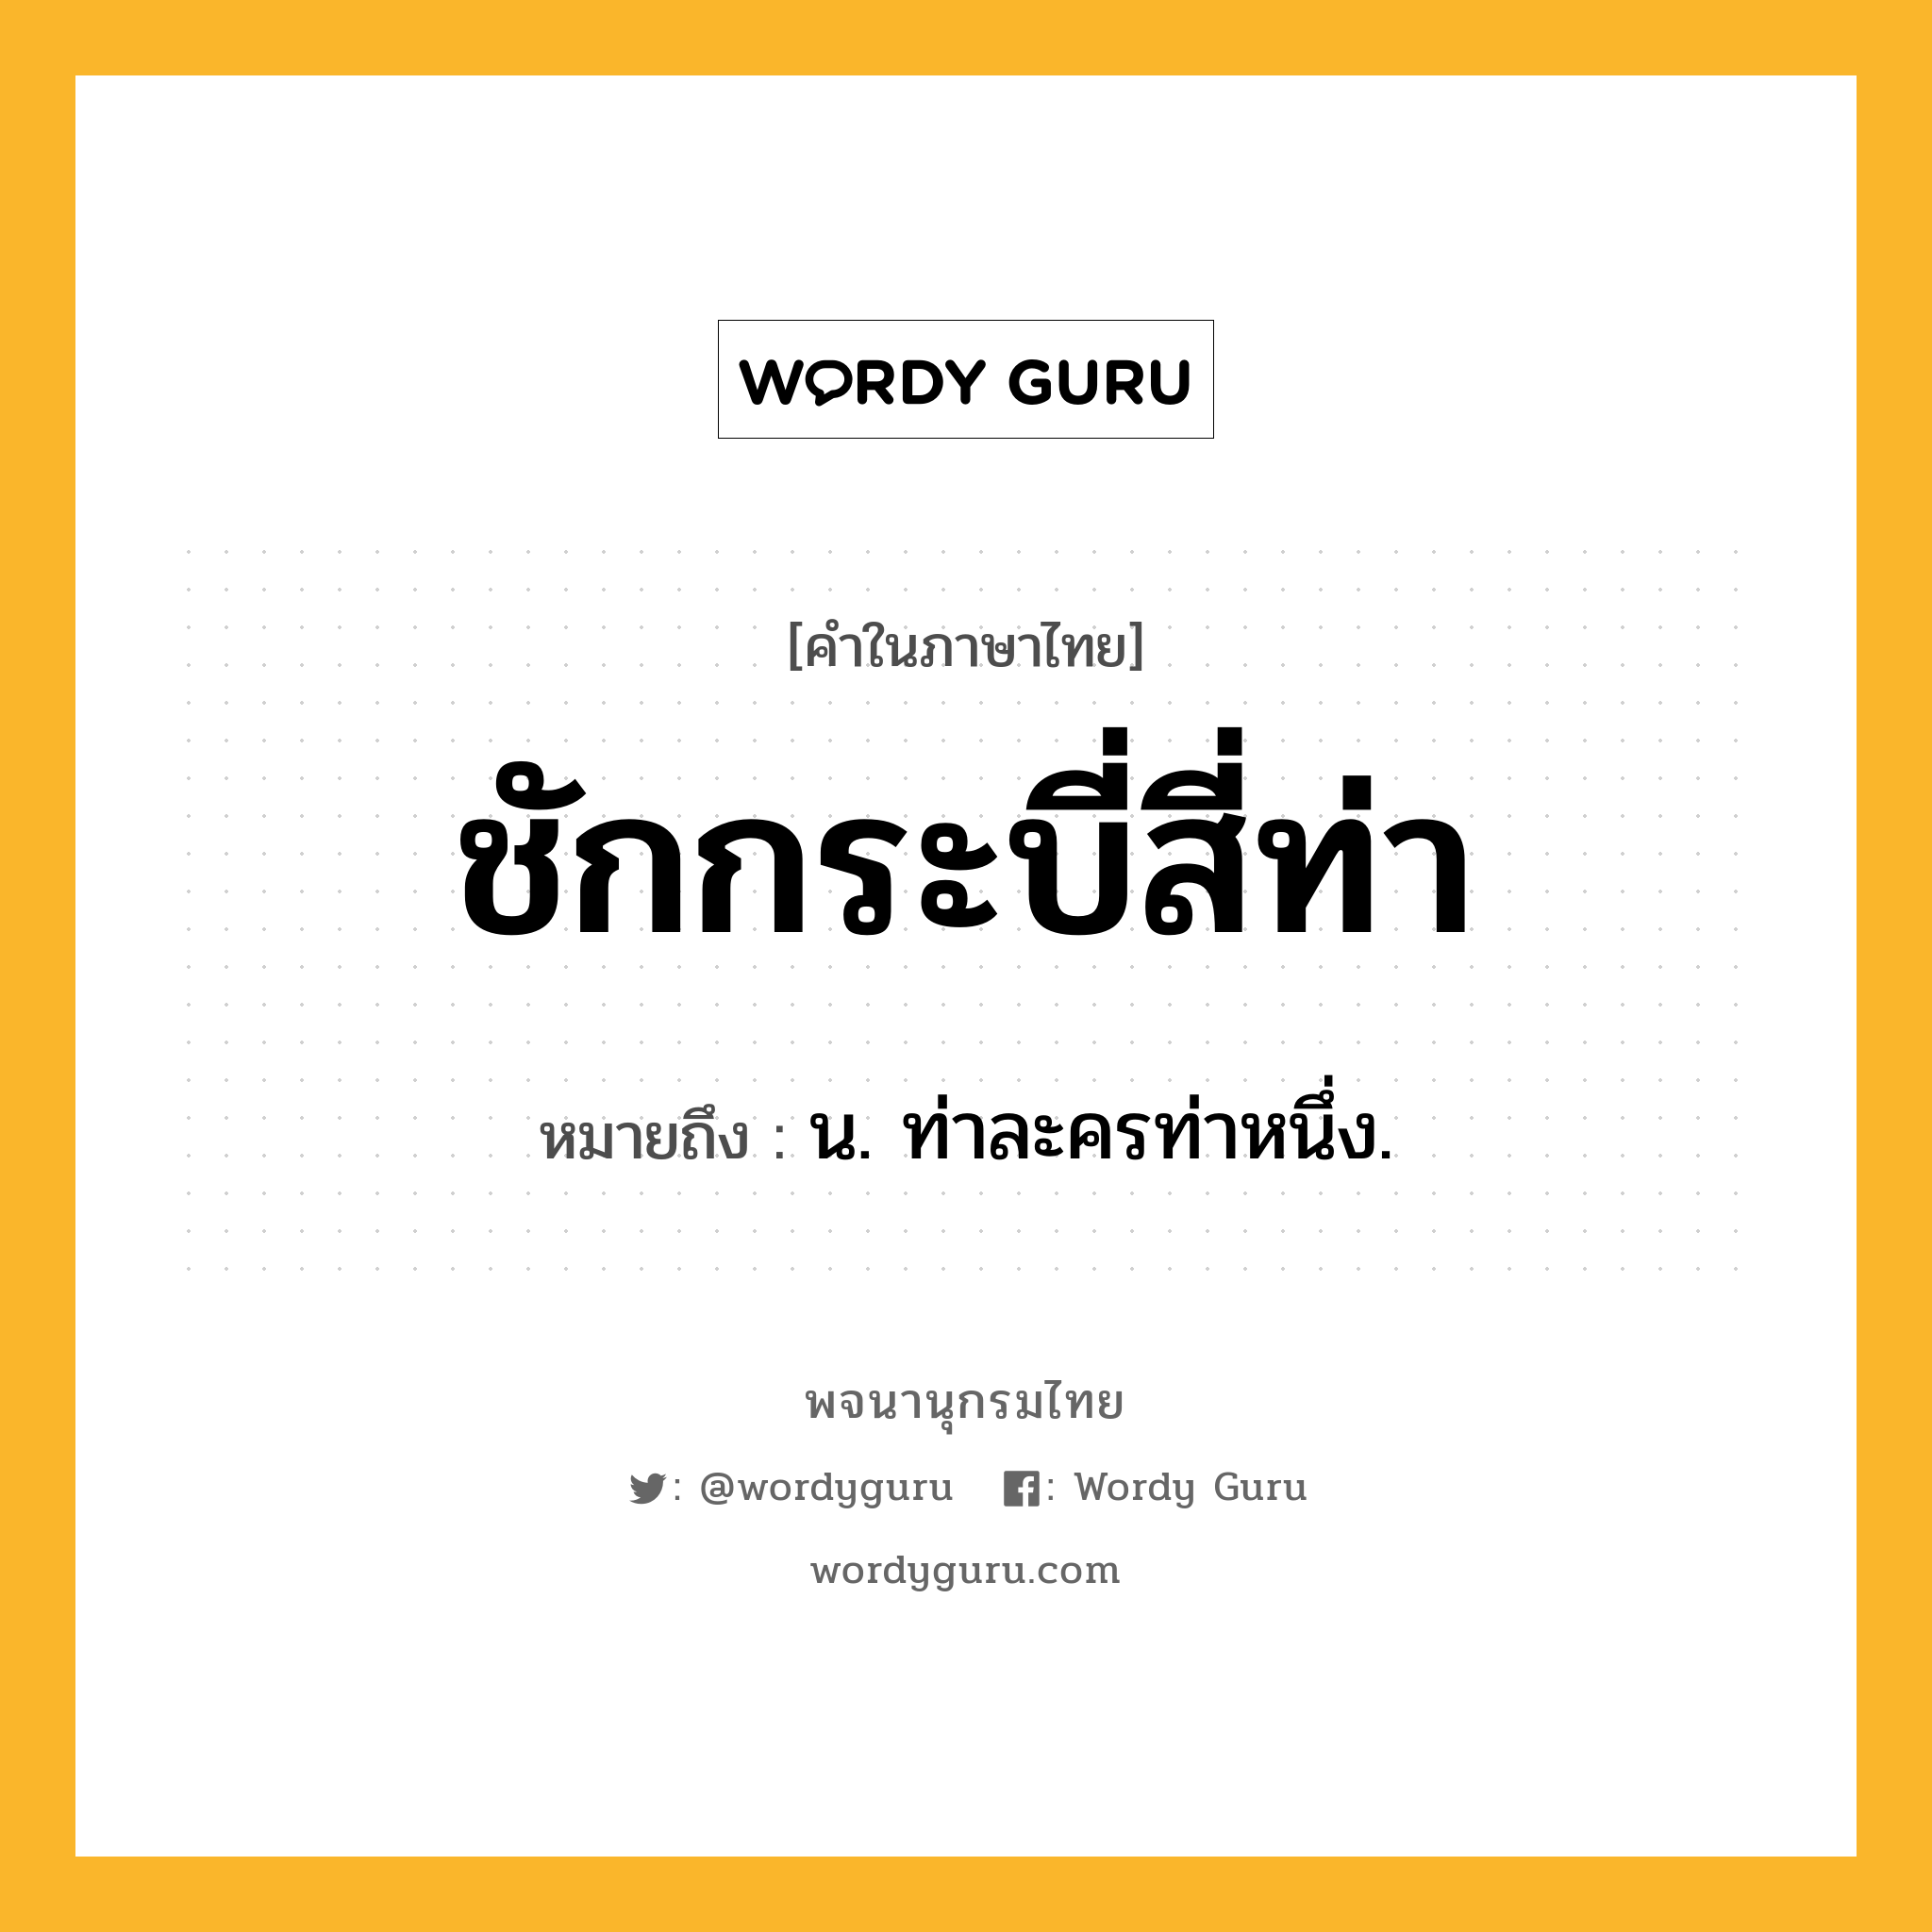 ชักกระบี่สี่ท่า ความหมาย หมายถึงอะไร?, คำในภาษาไทย ชักกระบี่สี่ท่า หมายถึง น. ท่าละครท่าหนึ่ง.